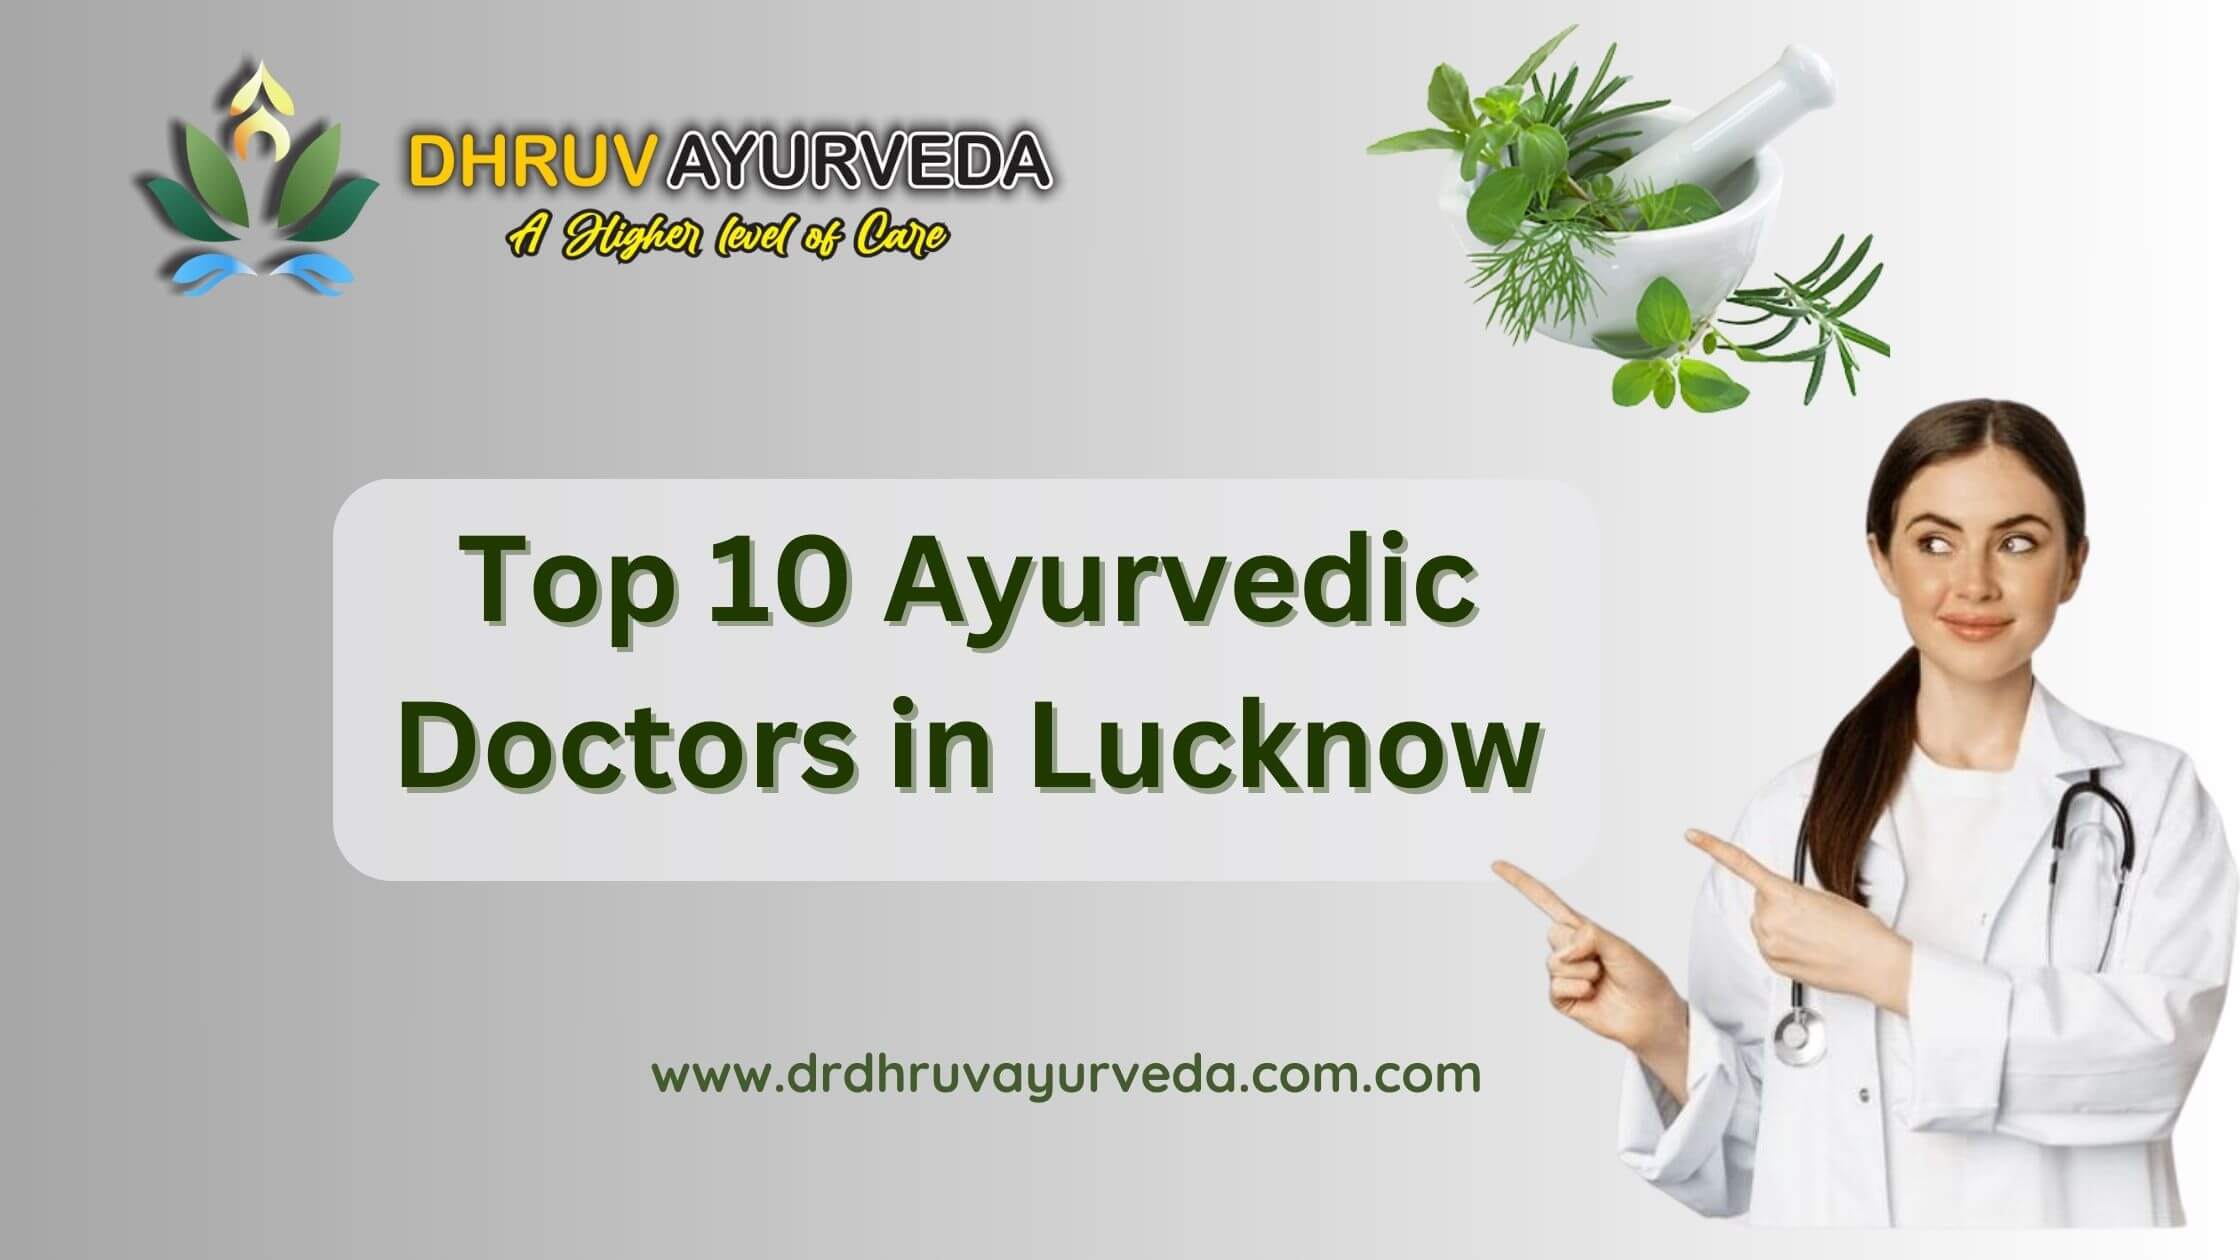 Top 10 Ayurvedic Doctors in Lucknow